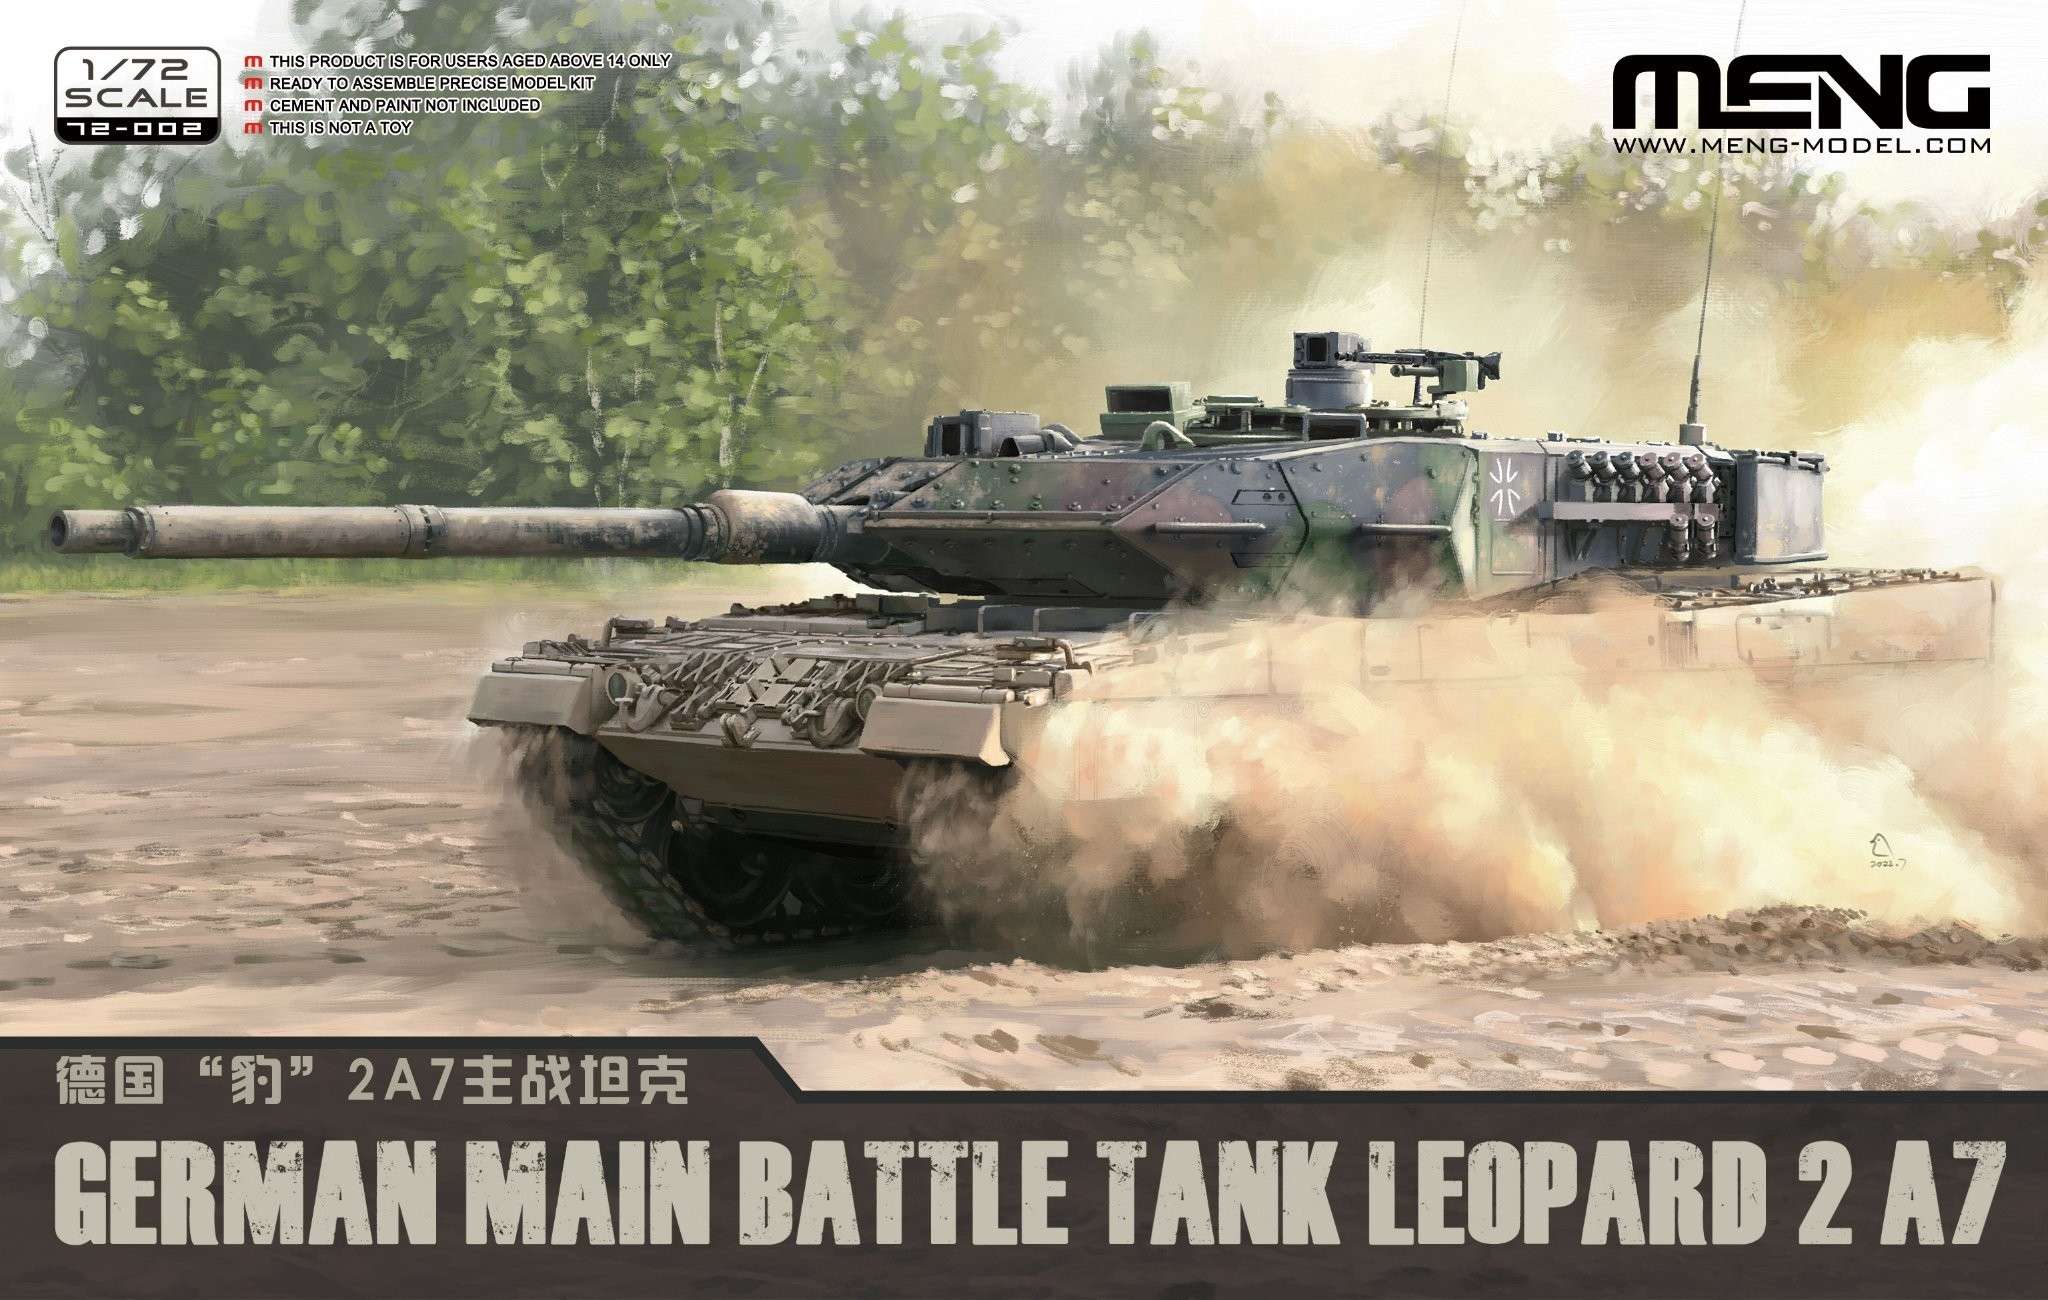 72-002 German Main Battle Tank Leopard 2 A7